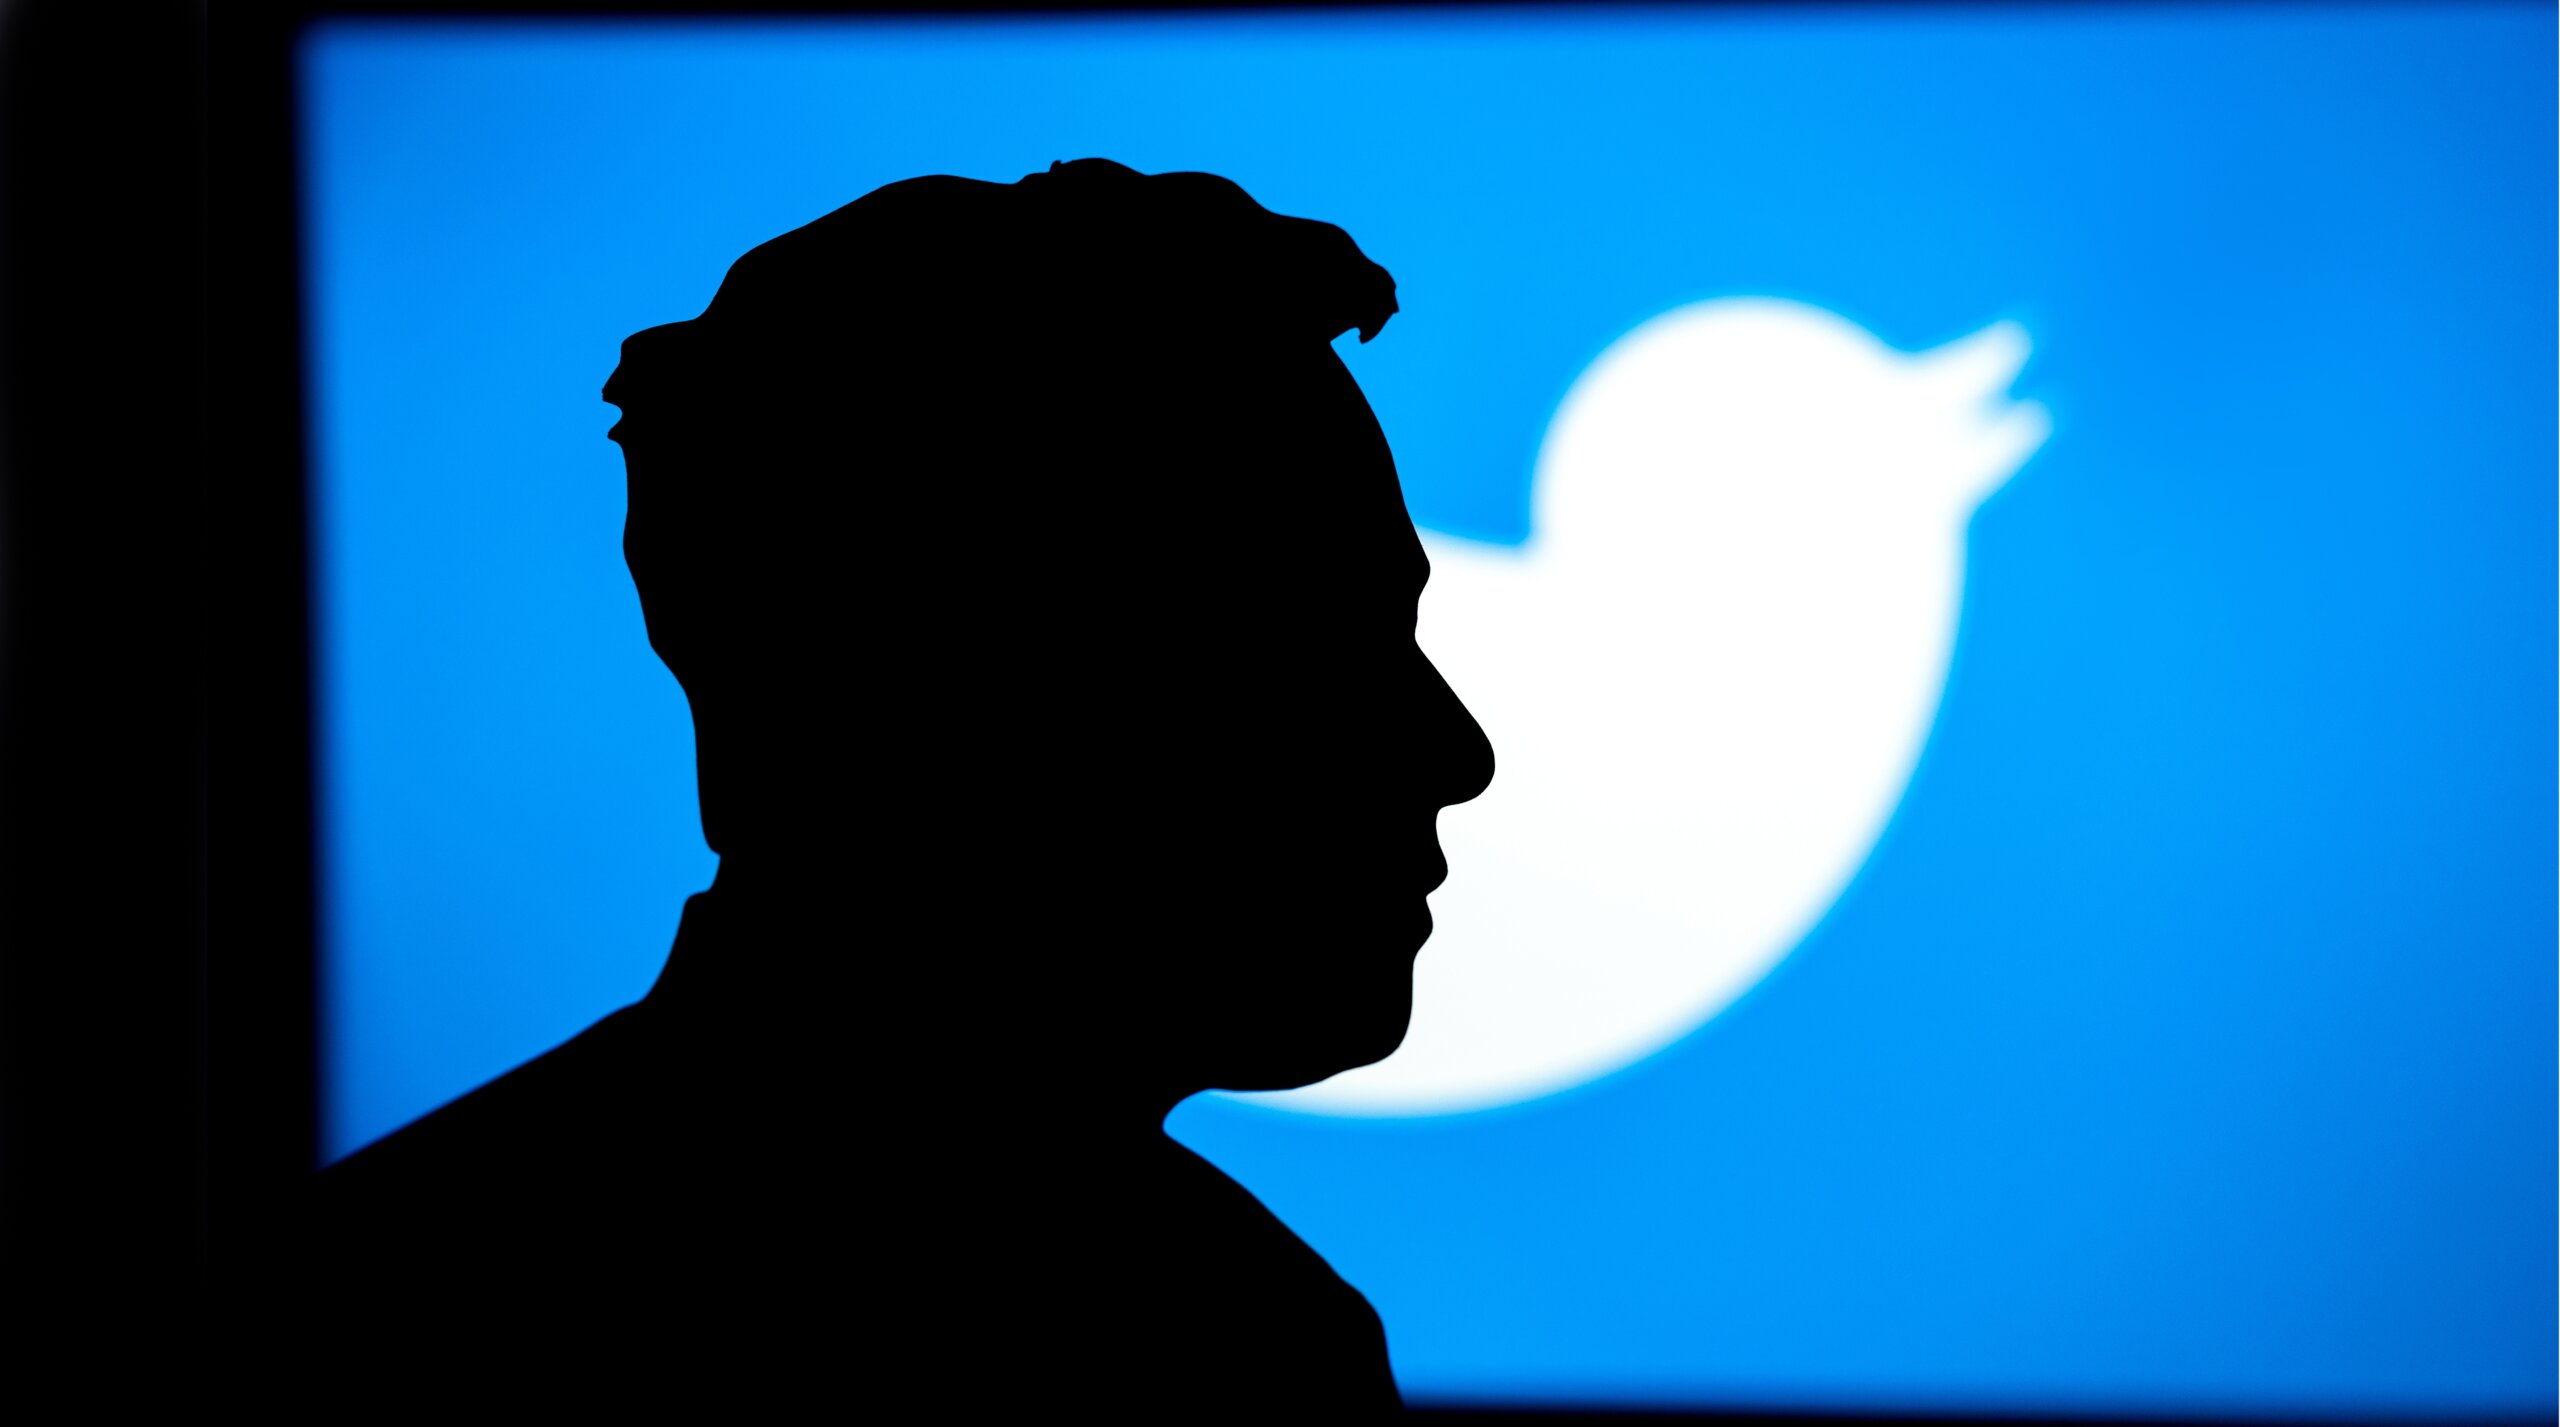 Elon Musk's silhouette against Twitter logo